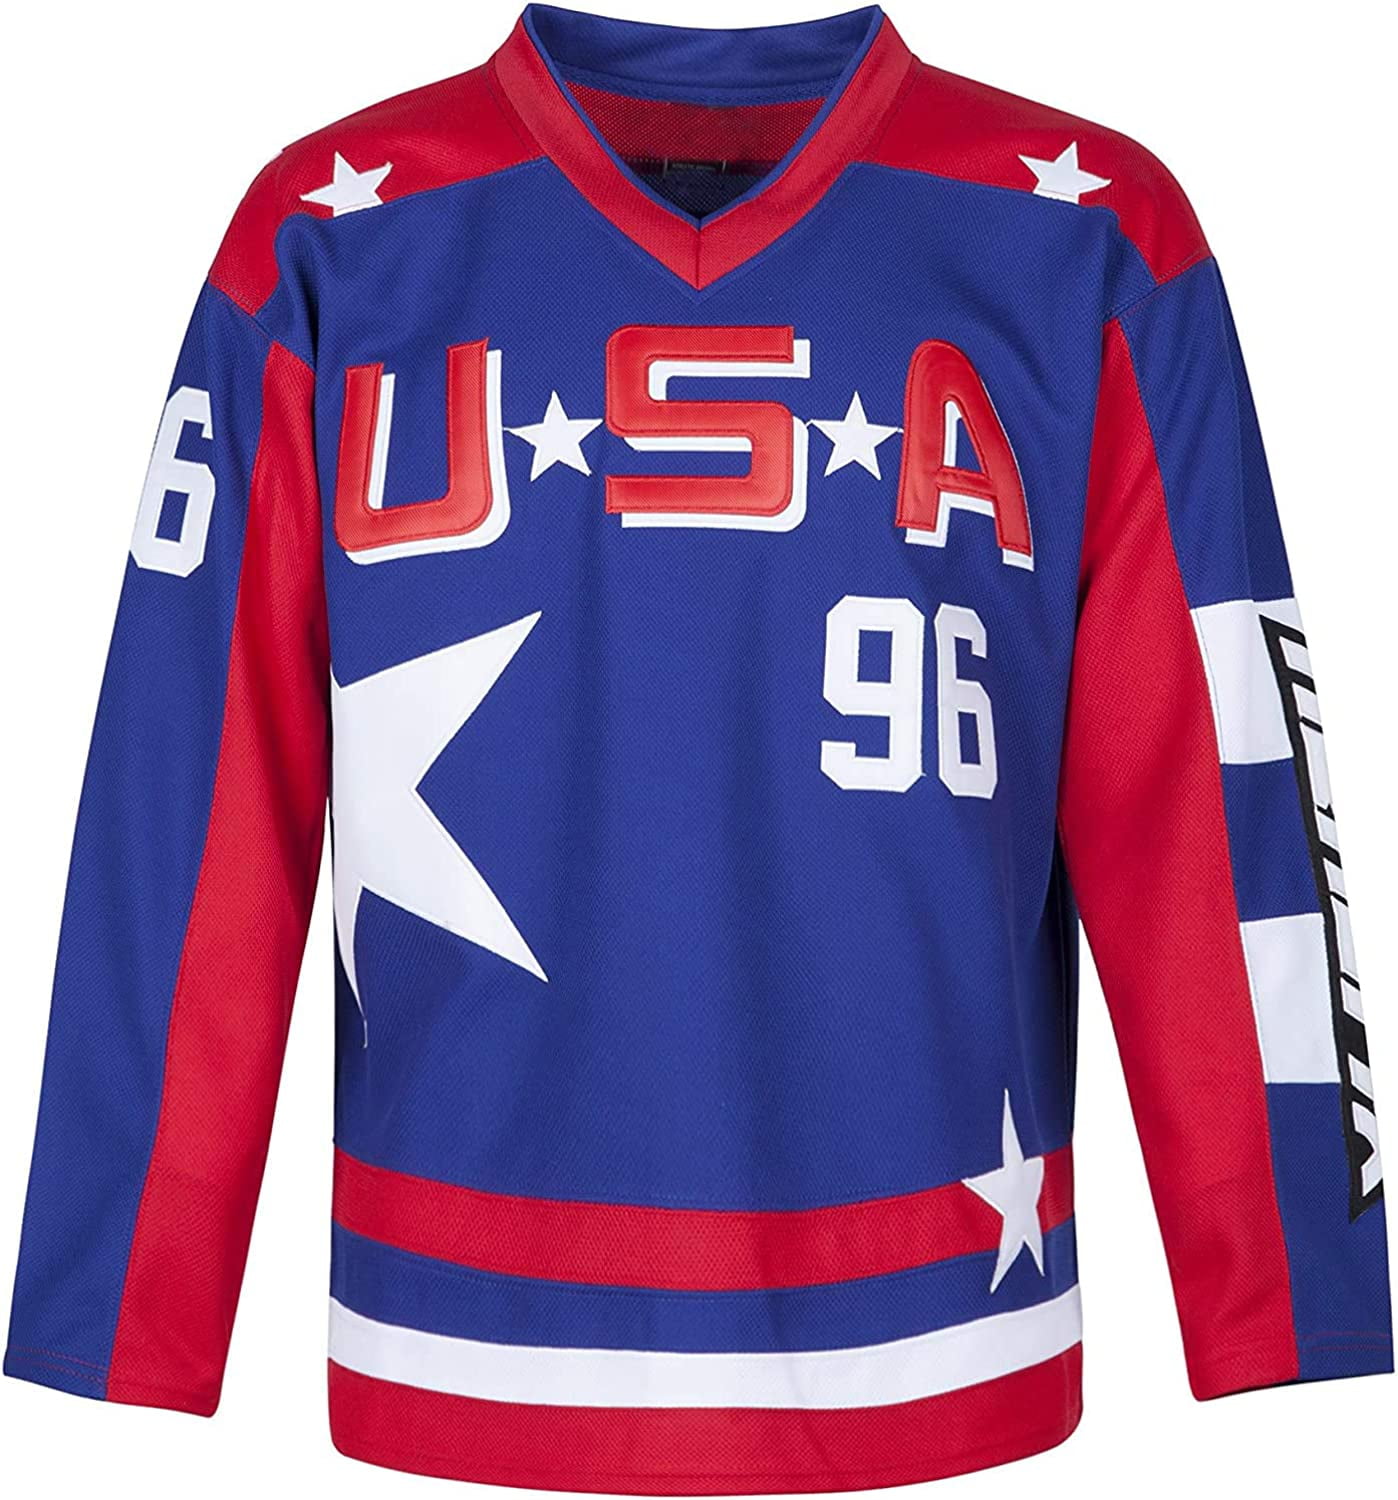 90s No Limit Soldier All Star Hockey Jersey – Naptown Thrift